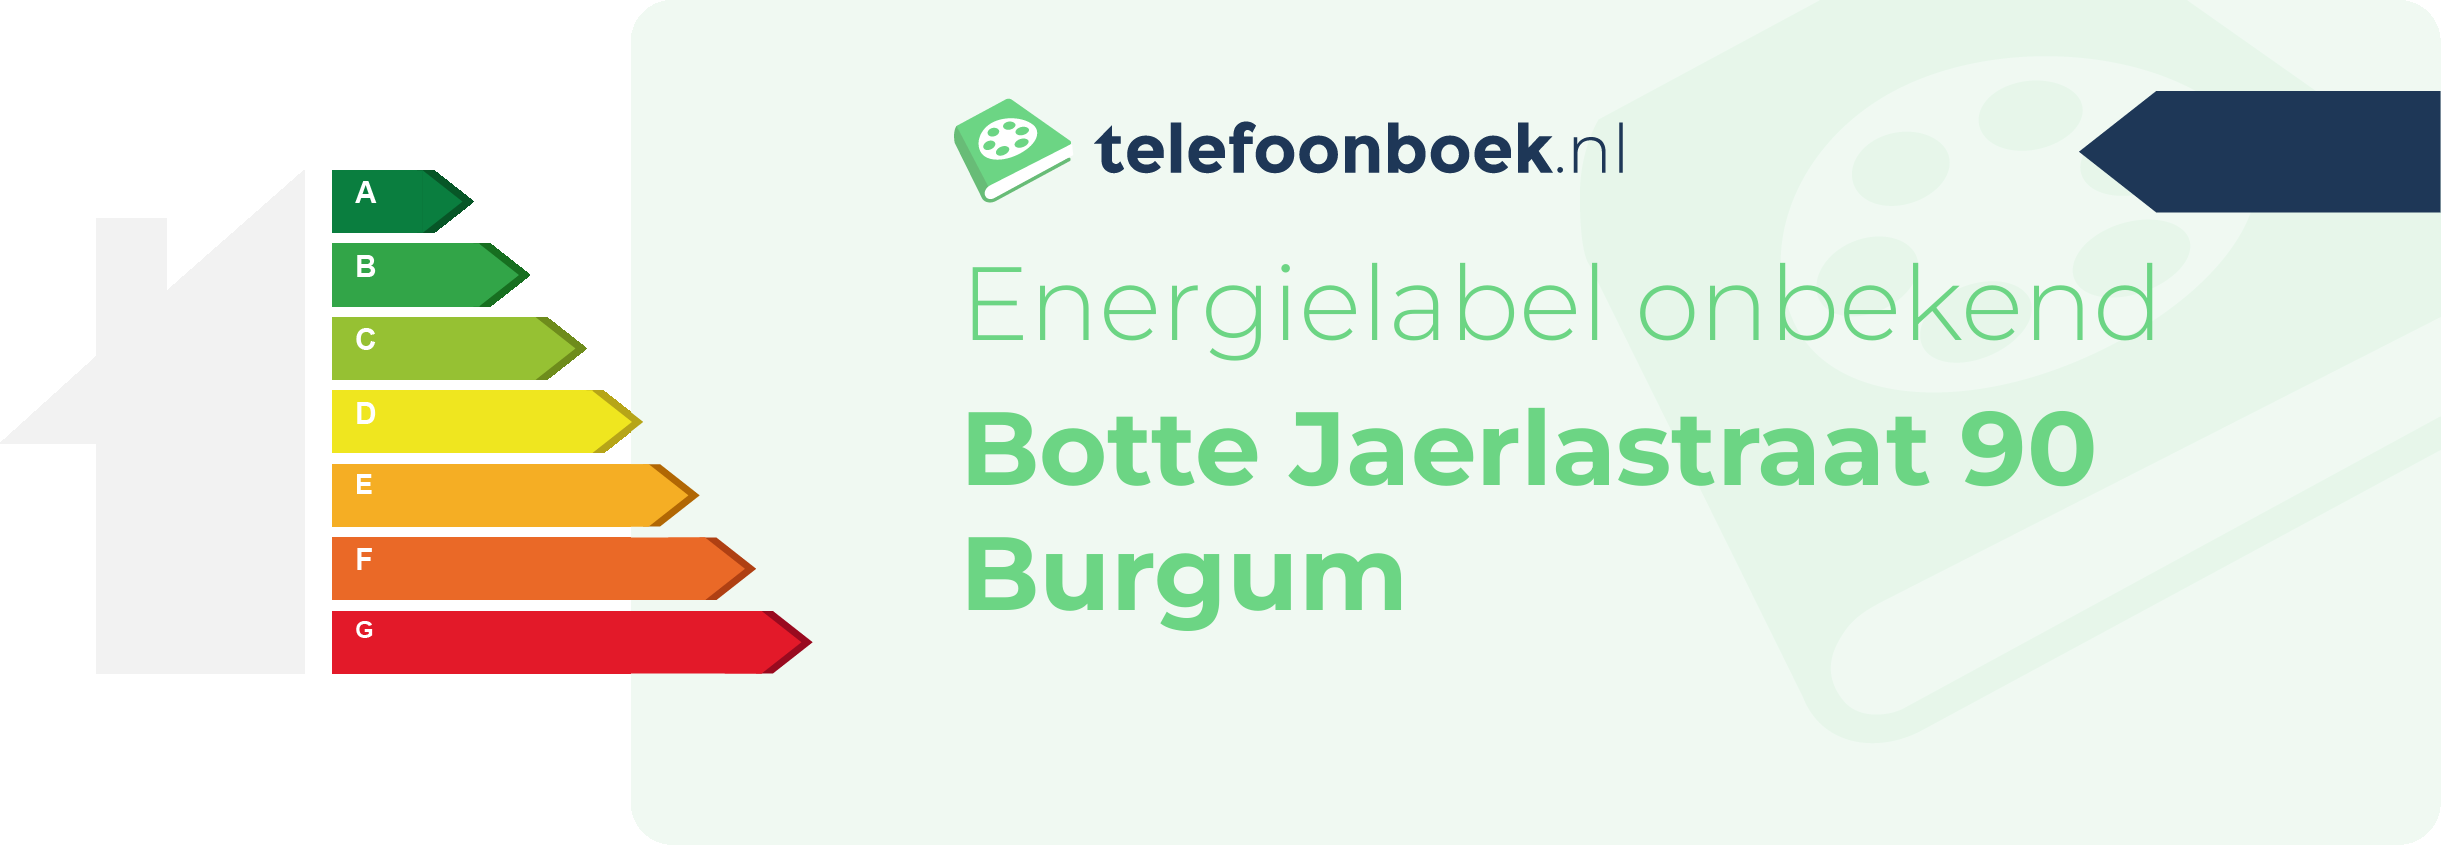 Energielabel Botte Jaerlastraat 90 Burgum